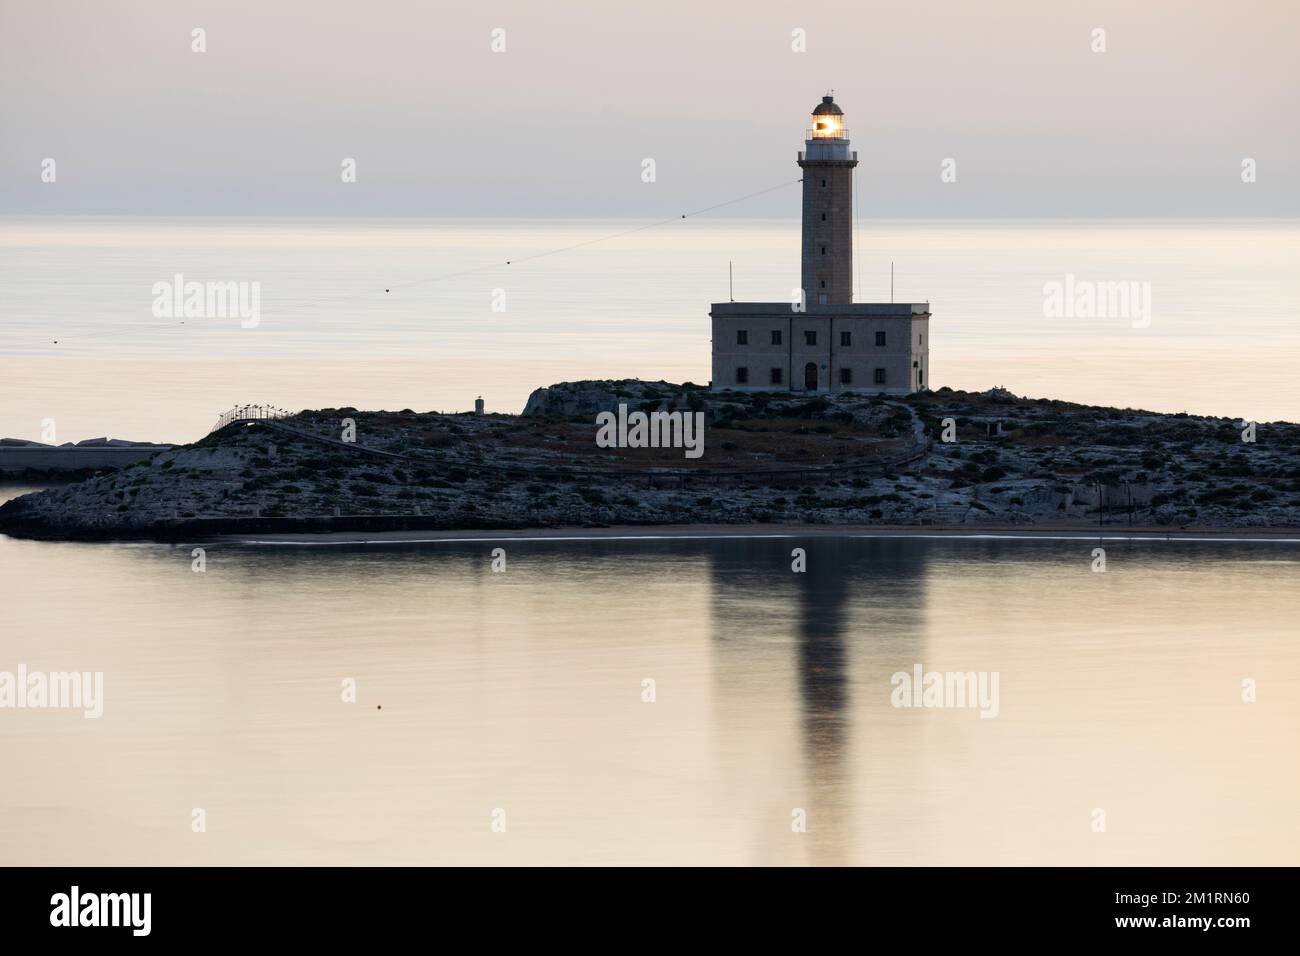 Faro di Vieste all'alba, Vieste, Provincia di Foggia, Puglia, Italia, Europa Foto Stock